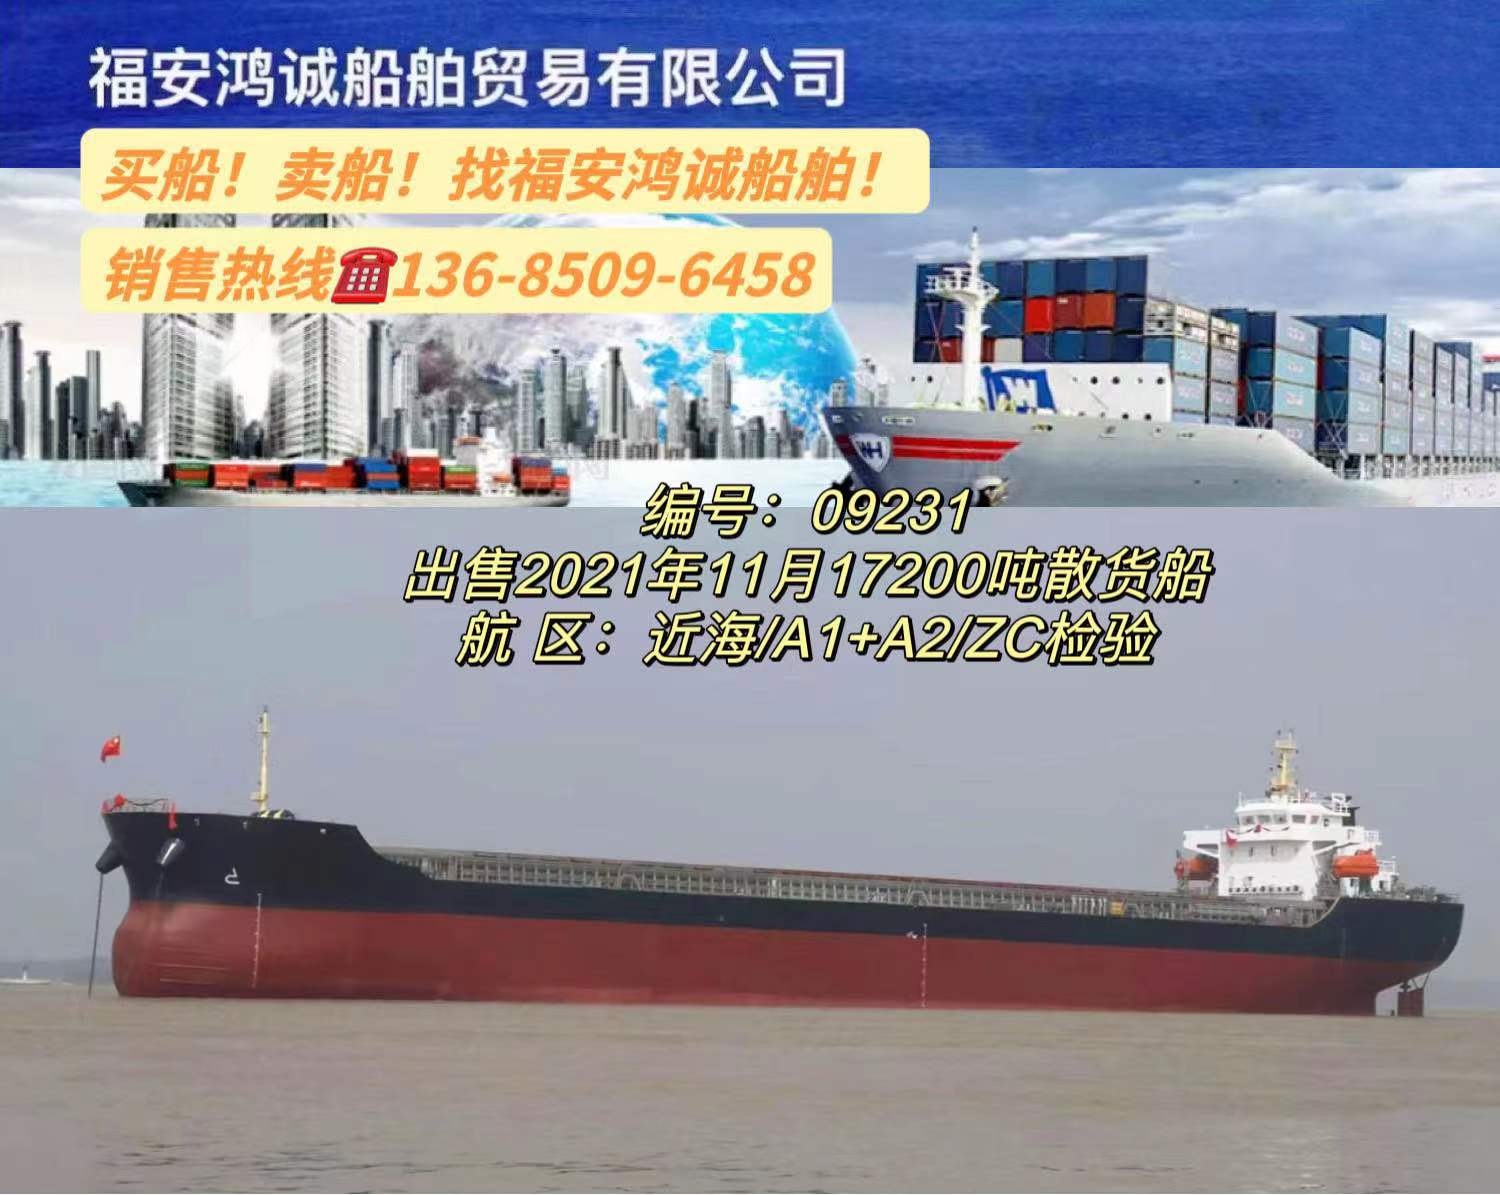 出售17200吨在航散货船： 2021年11月安徽建造/